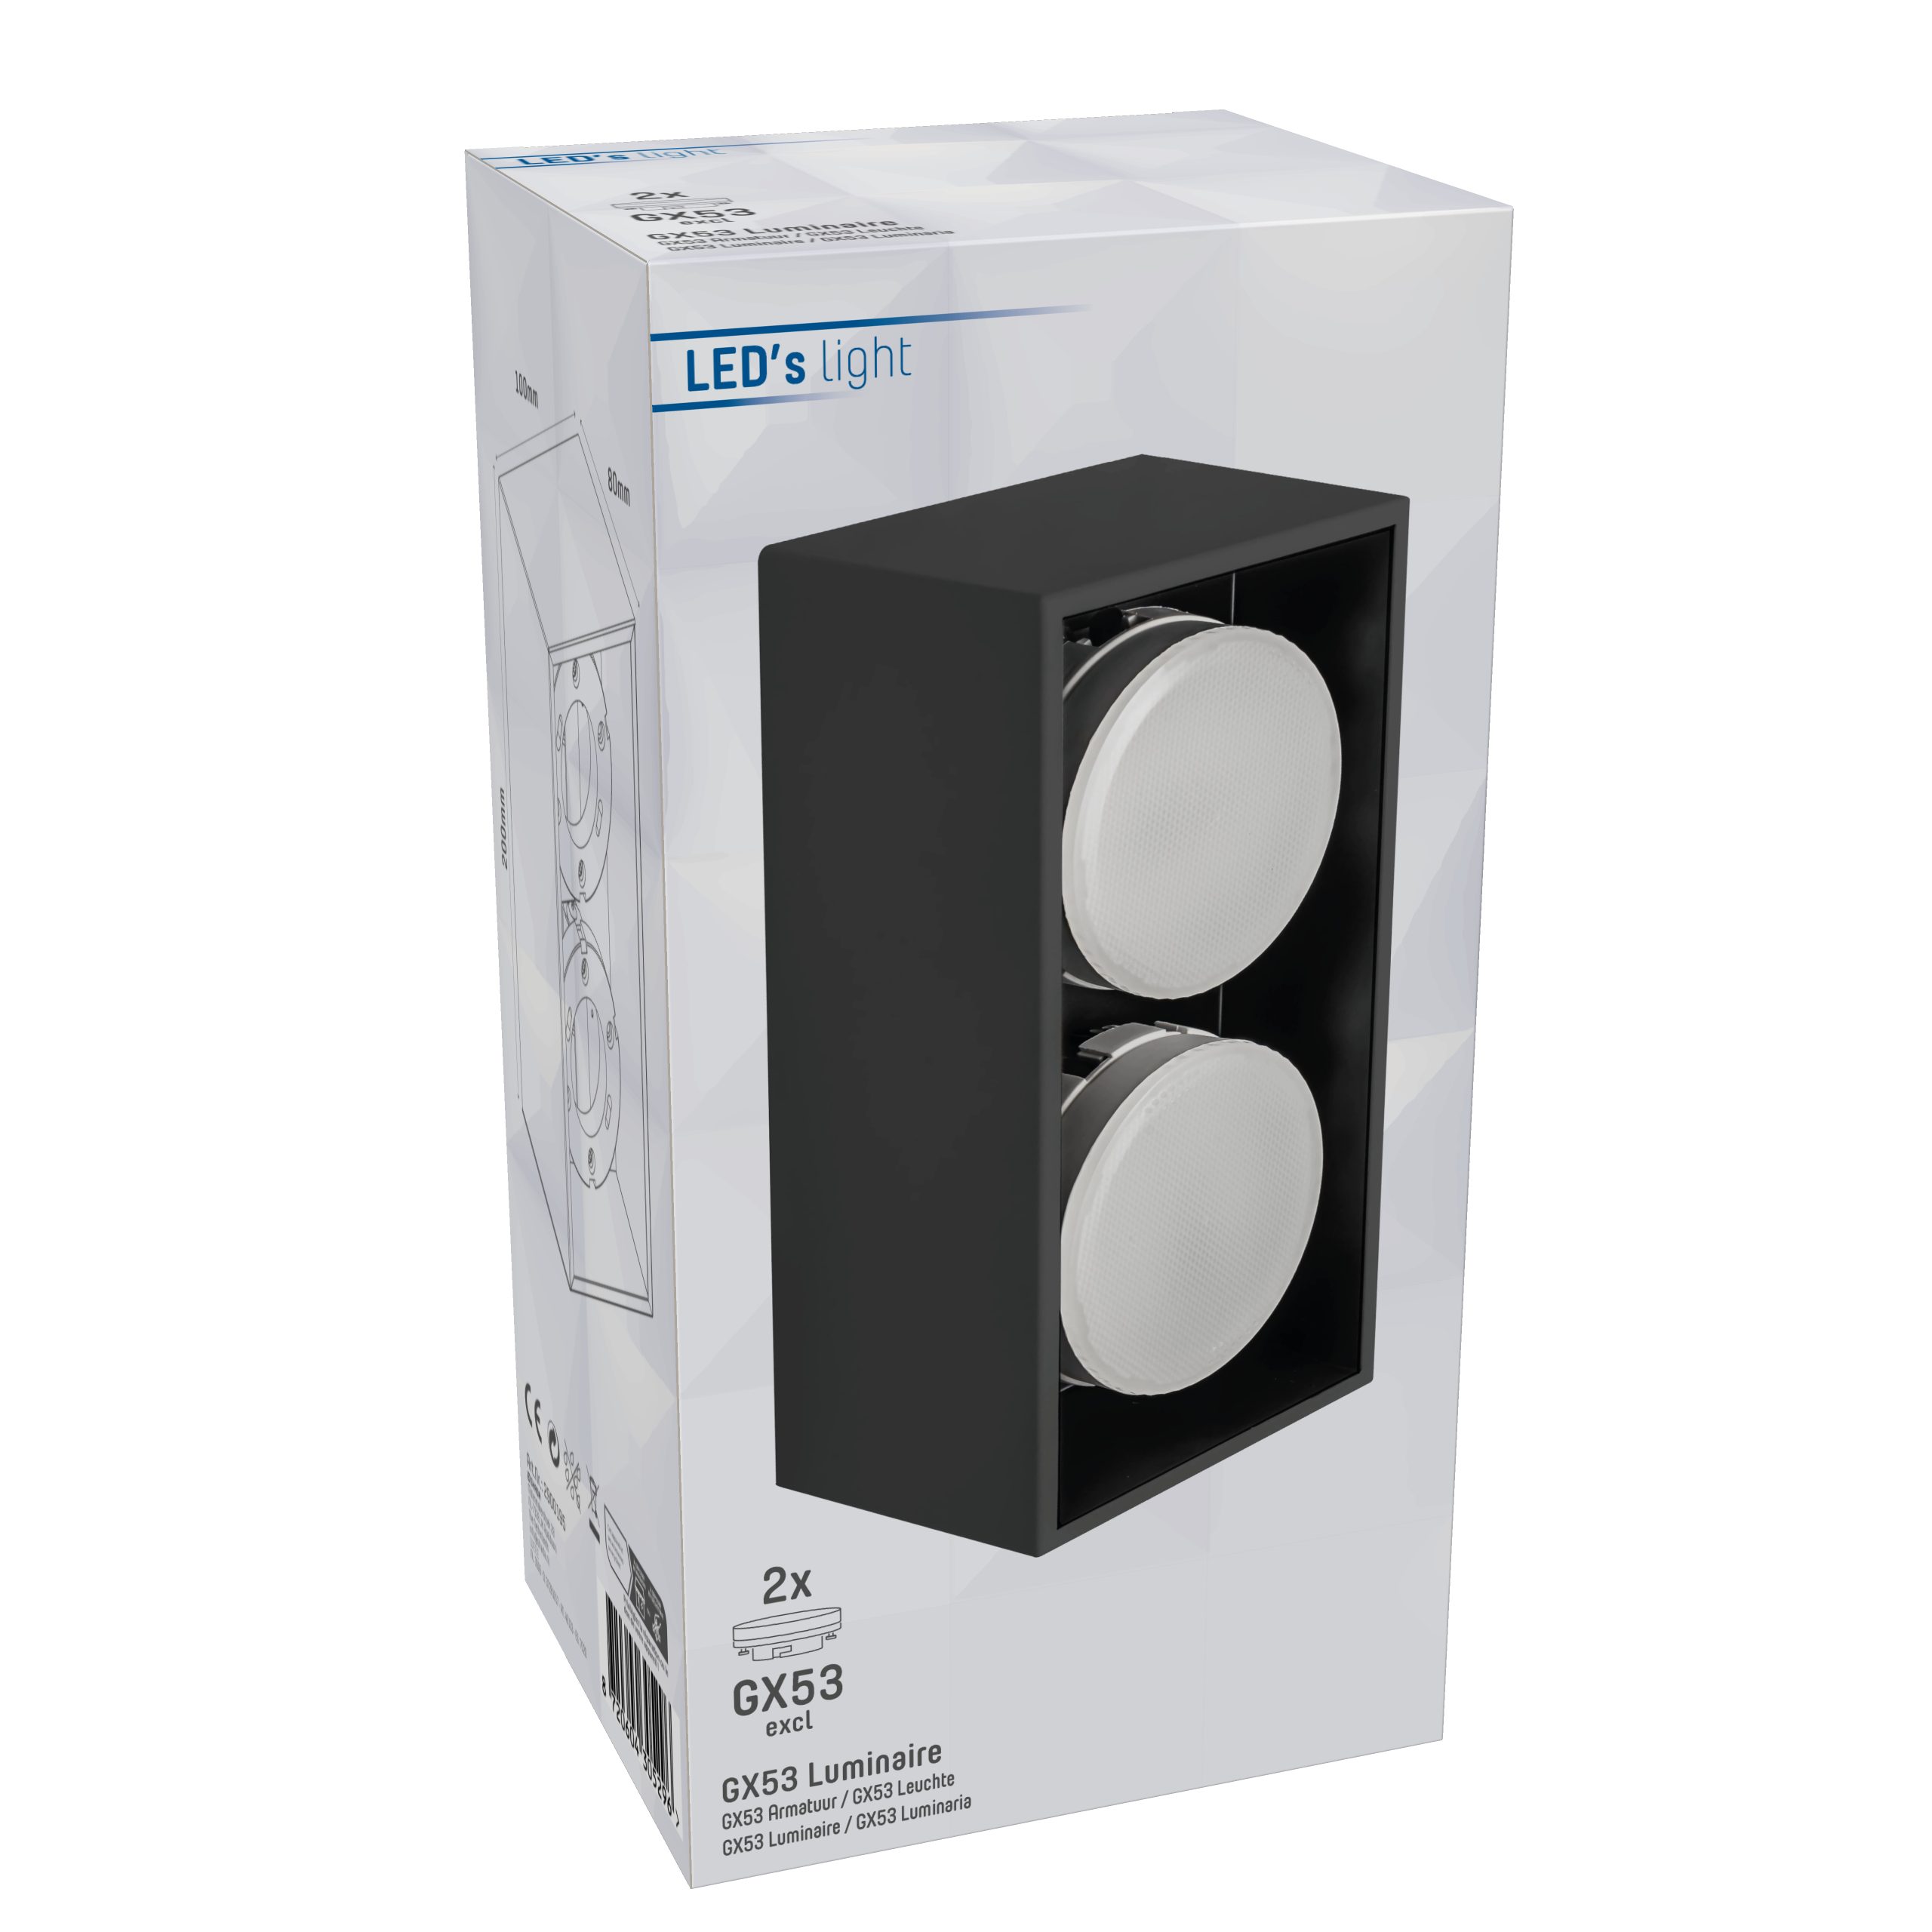 LED's light schwarz GX53 Deckenleuchte, 2x 12W LED, Deckenleuchte 2900195 bis LED